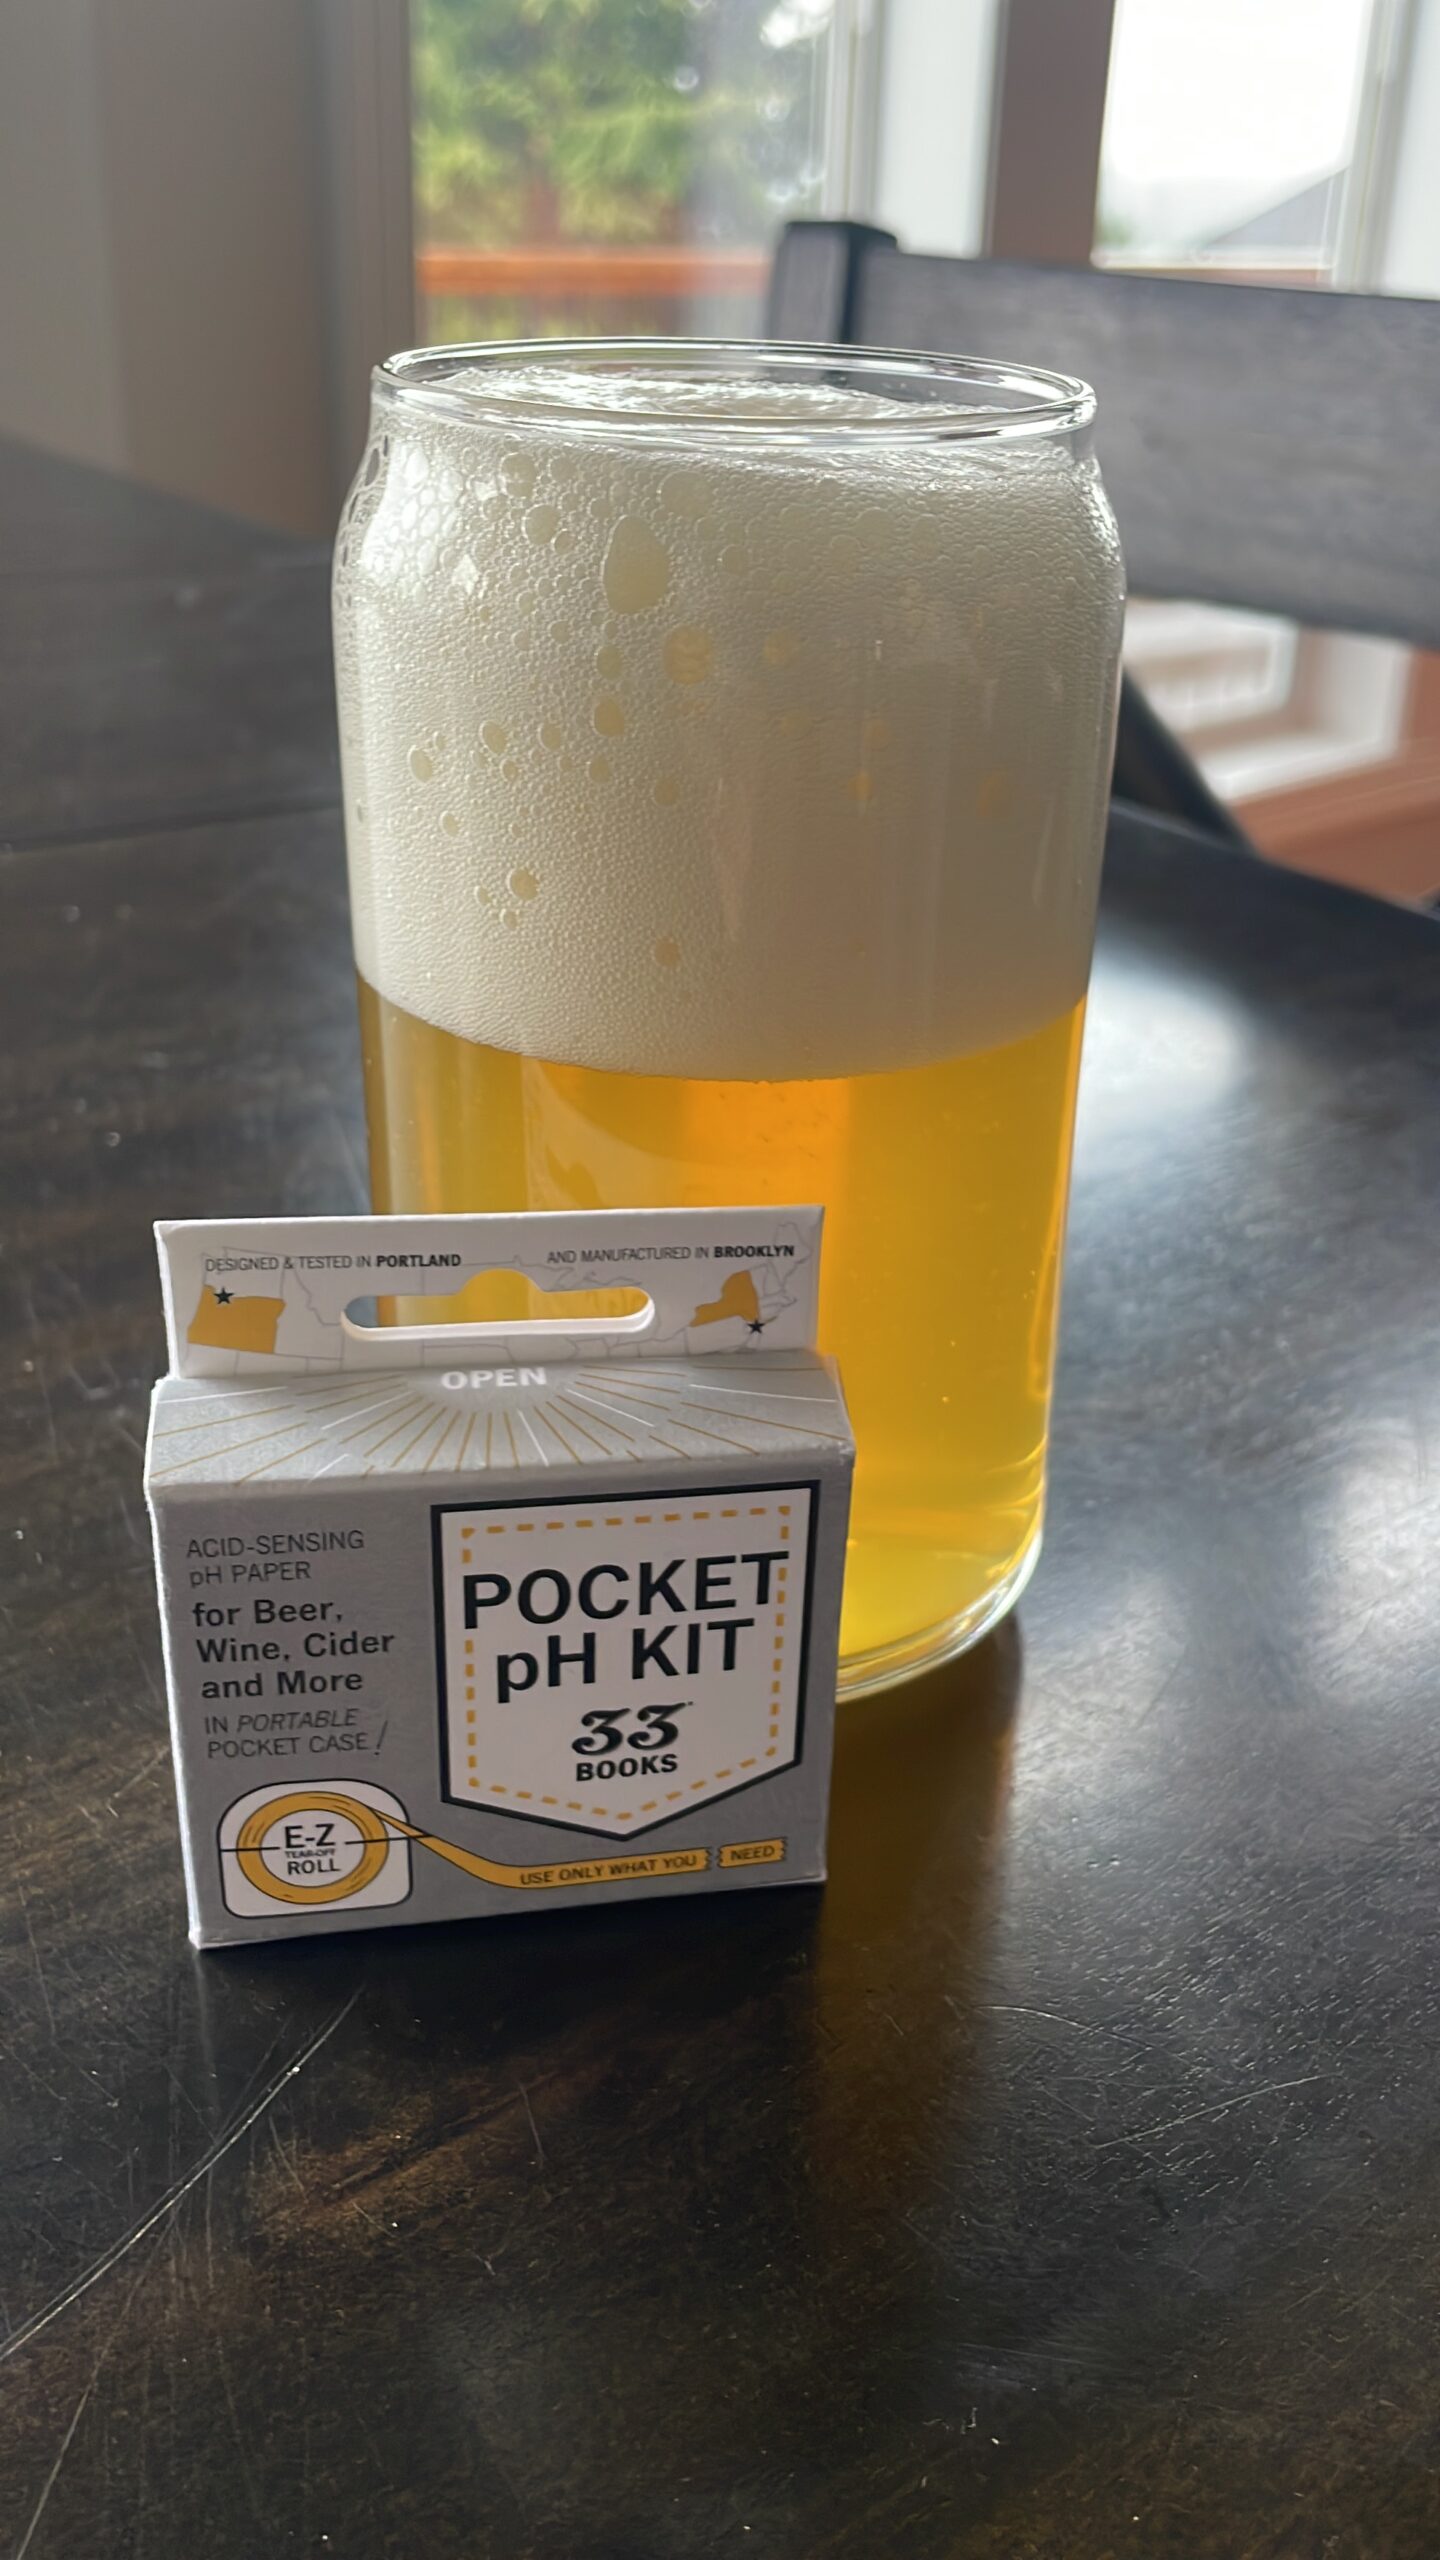 Pocket pH kit